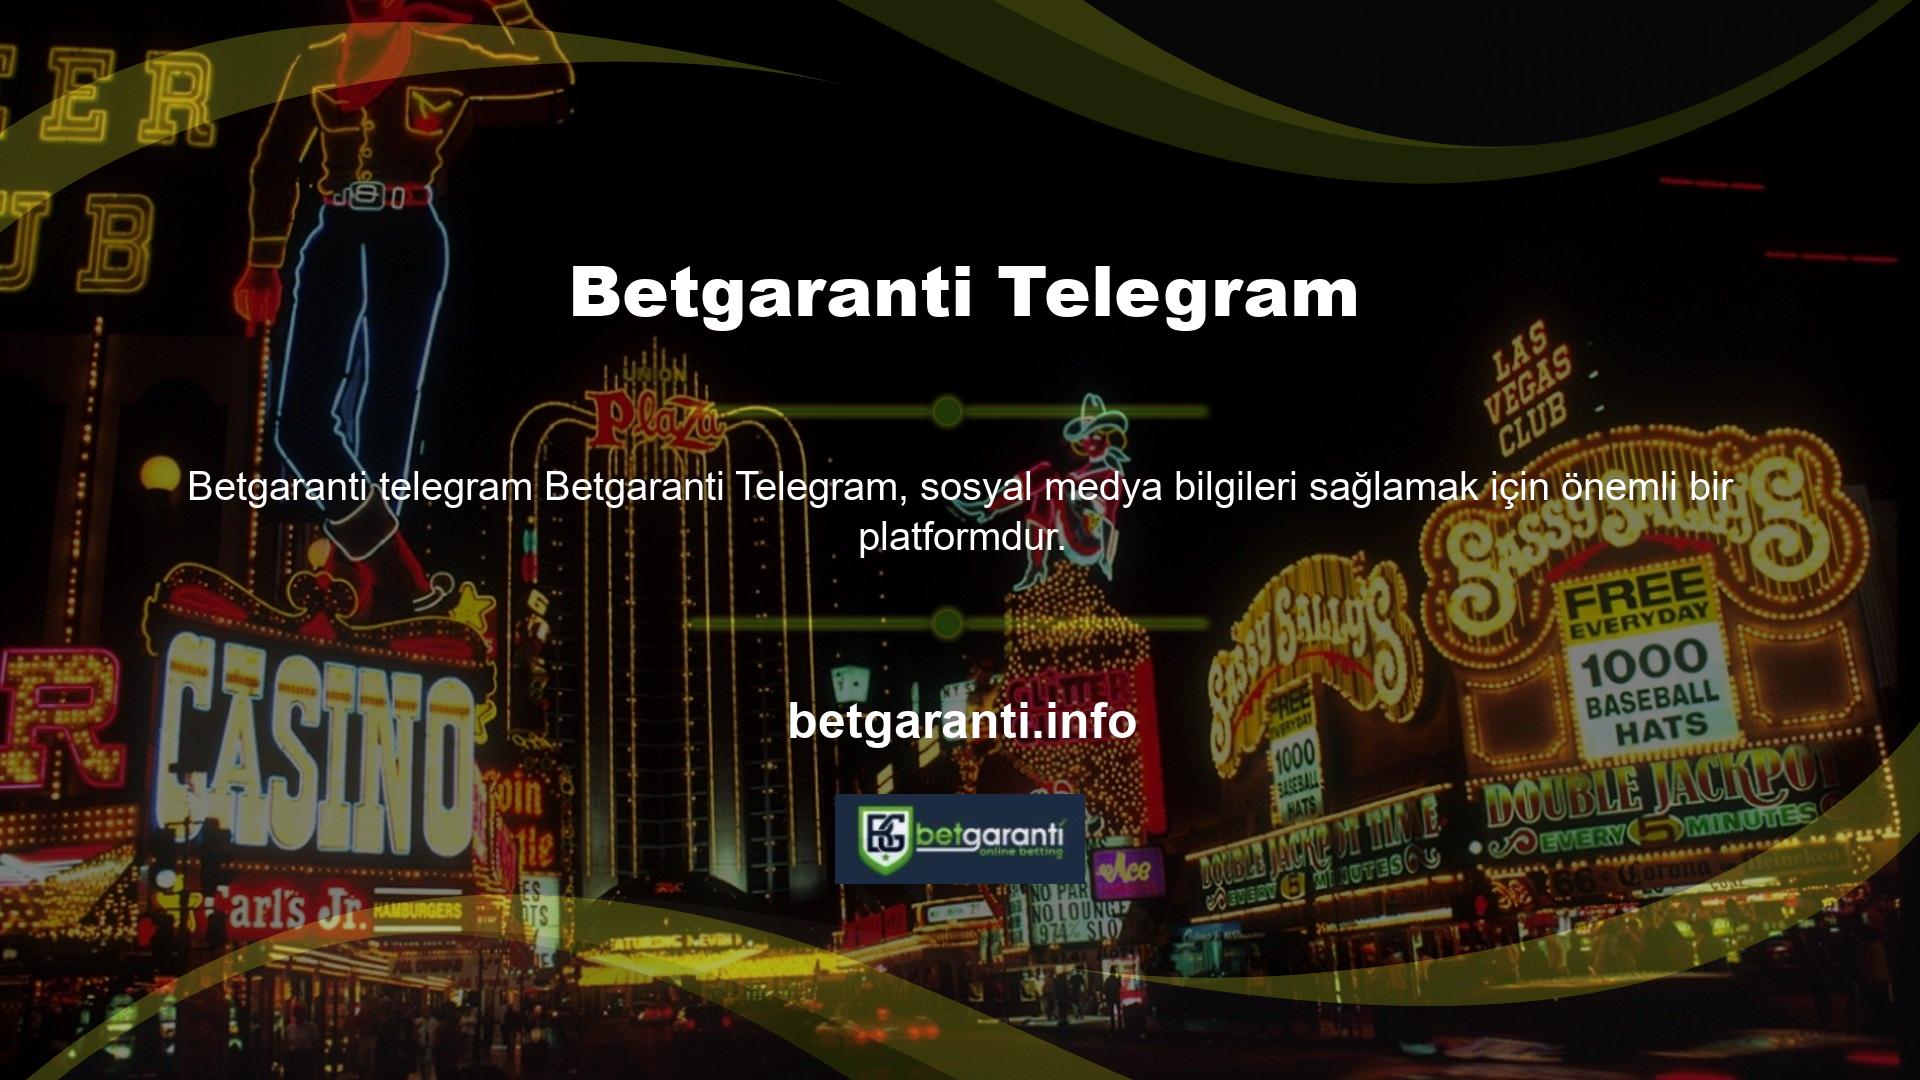 Online casino siteleri hakkında bilgi almak ve site operatörleri ile iletişim kurmak için Telegram uygulamasını kullanabilirsiniz